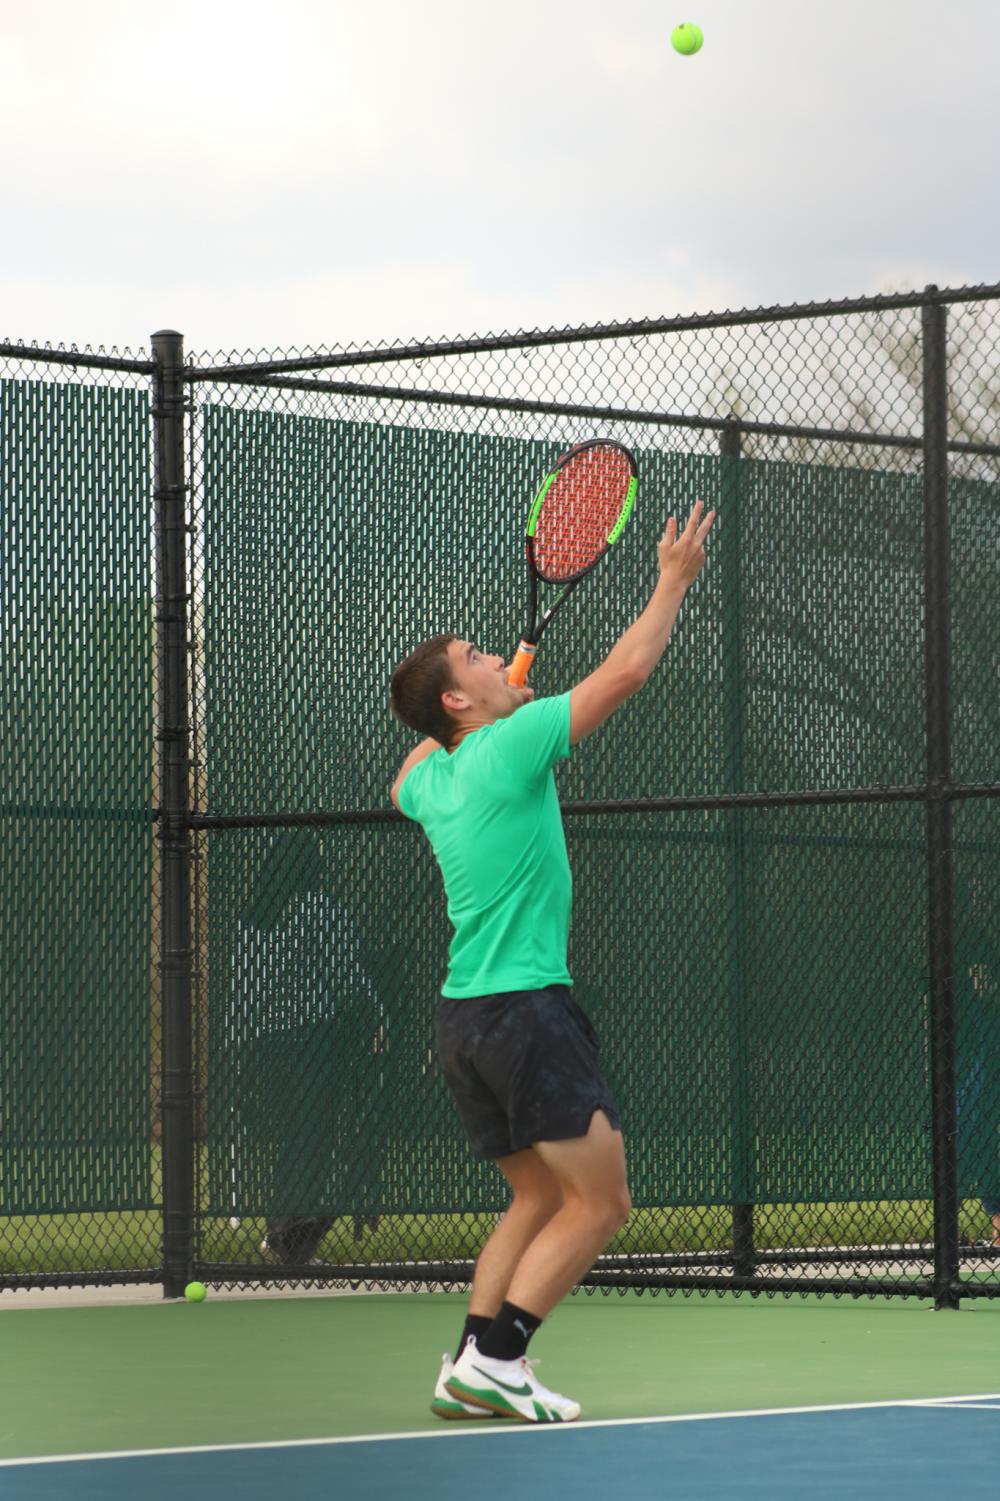 Varsity+Tennis+Tournament+%40+Campus+%28Photos+by+Zara+Thomas%29